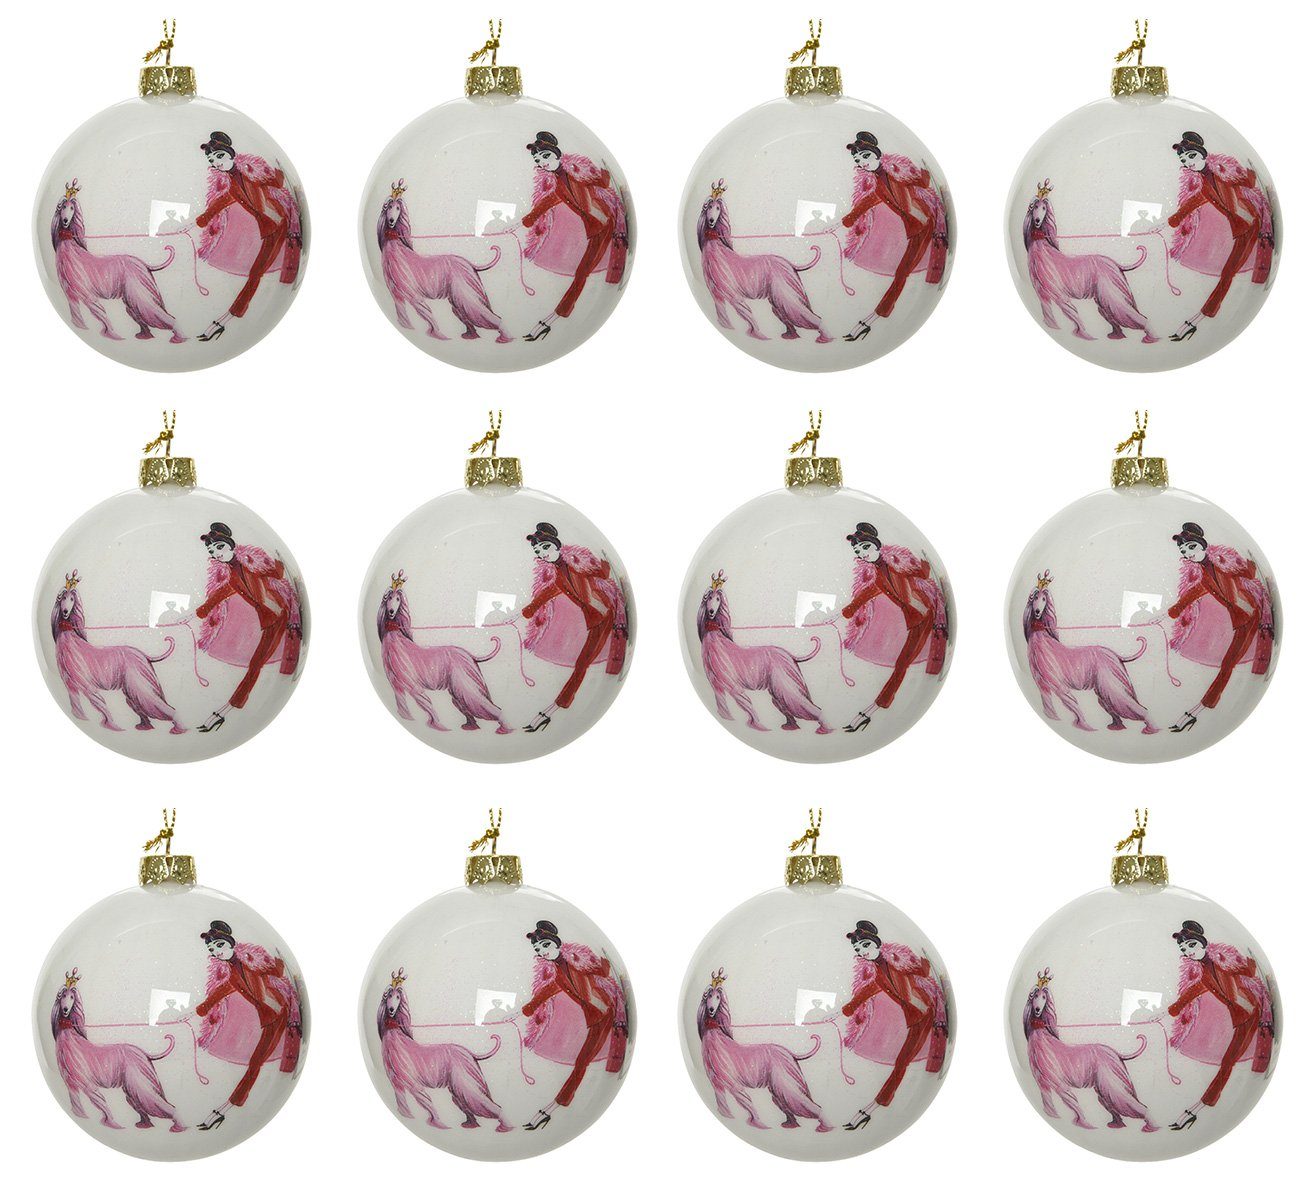 Decoris season decorations Christbaumschmuck, Weihnachtskugeln Kunststoff 8cm mit Motiv 12er Set - Weiß